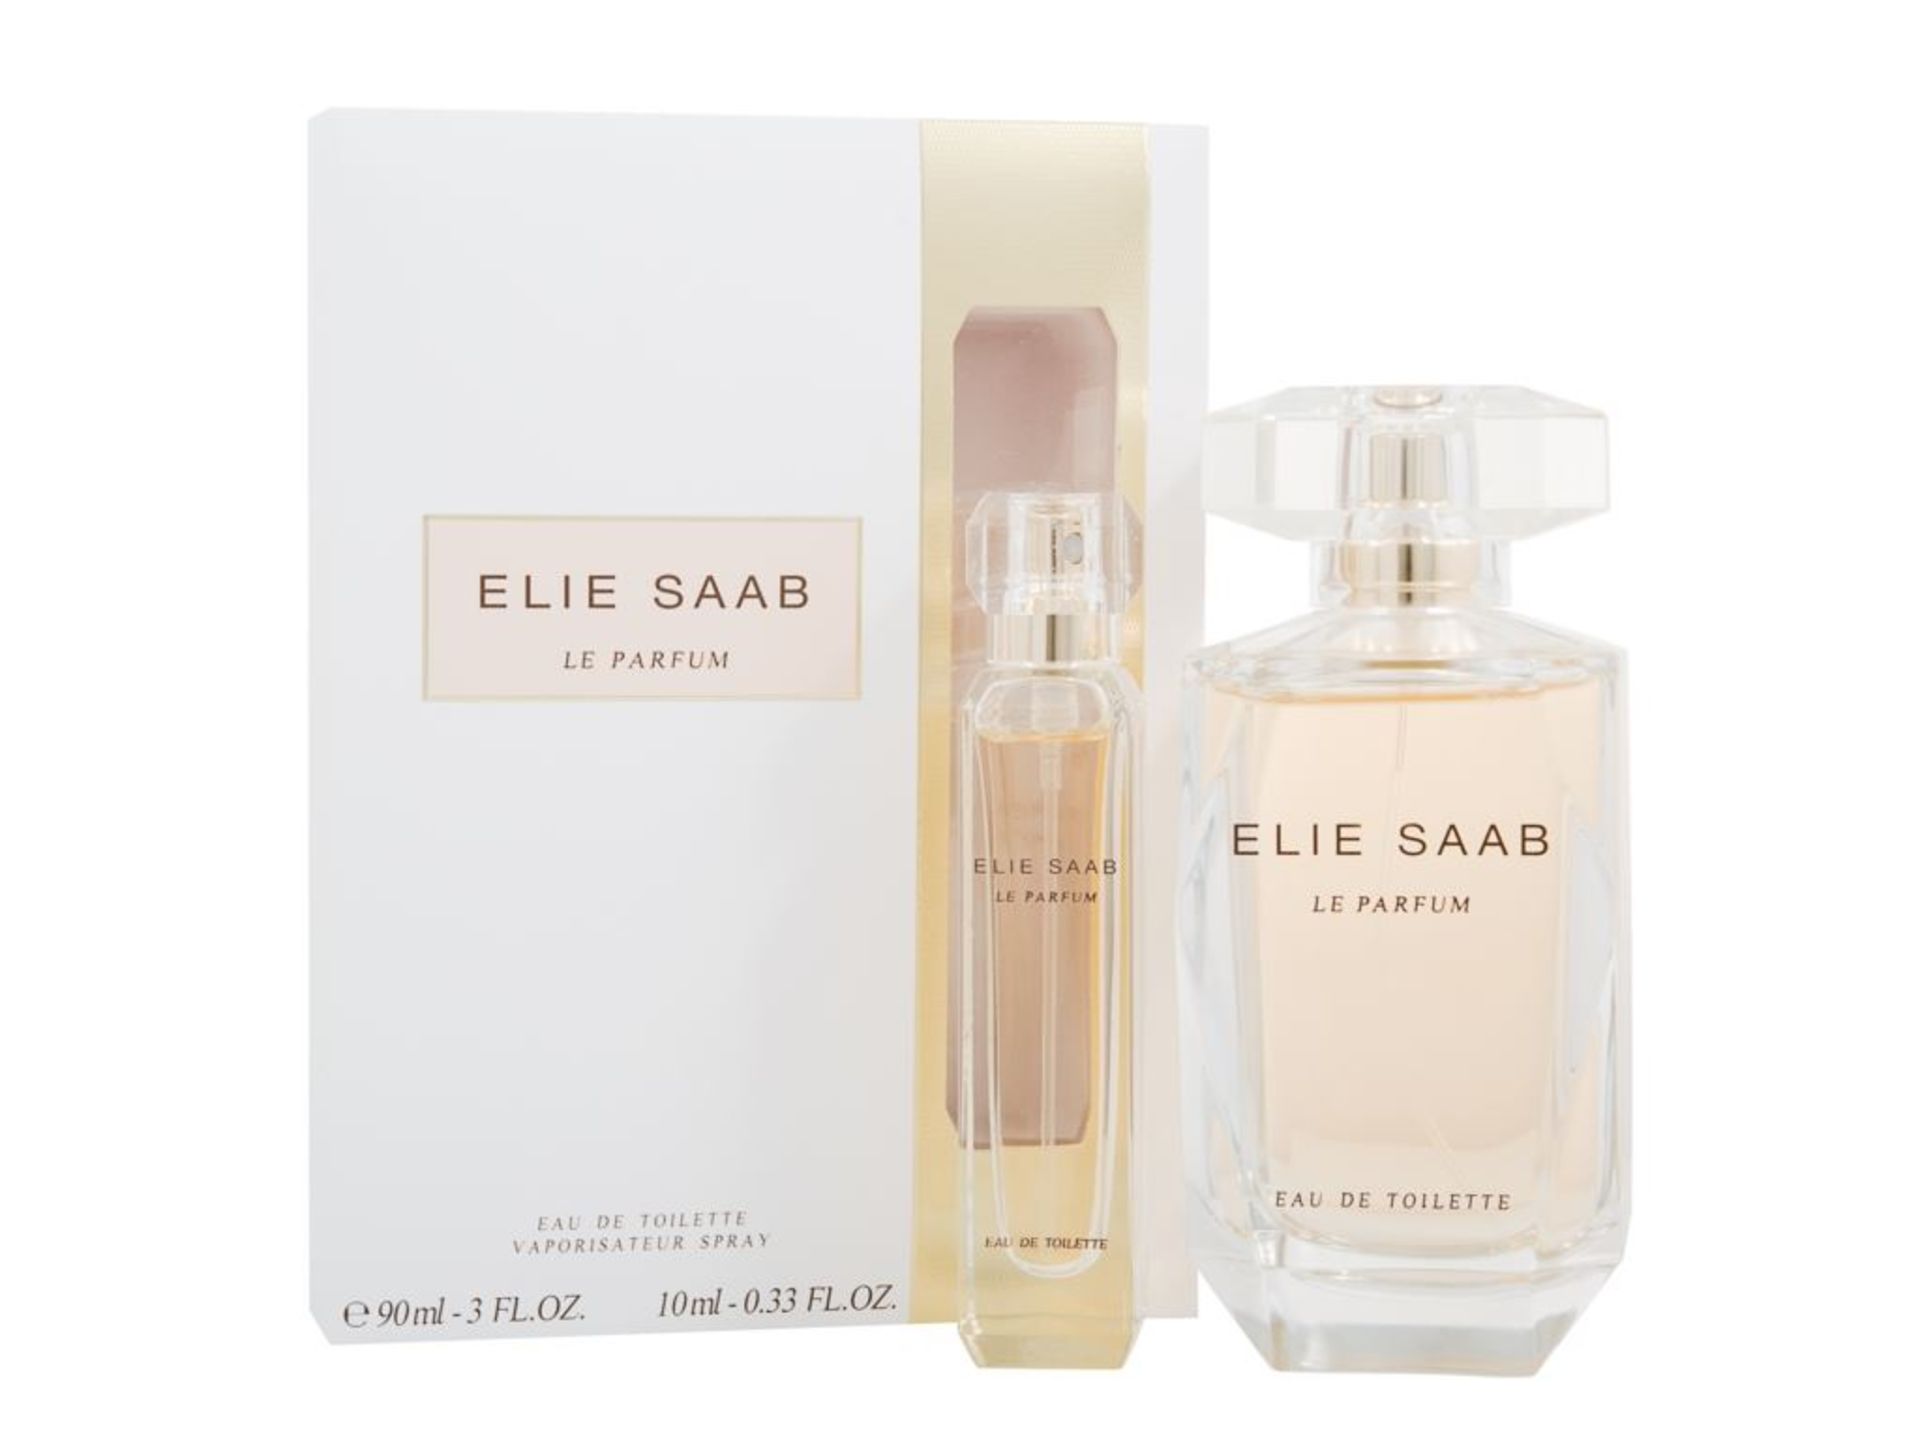 V *TRADE QTY* Brand New 90ml Elie Saab Le Parfum Eau De Toilette Vaporisateur Spray ISP £78.50 (